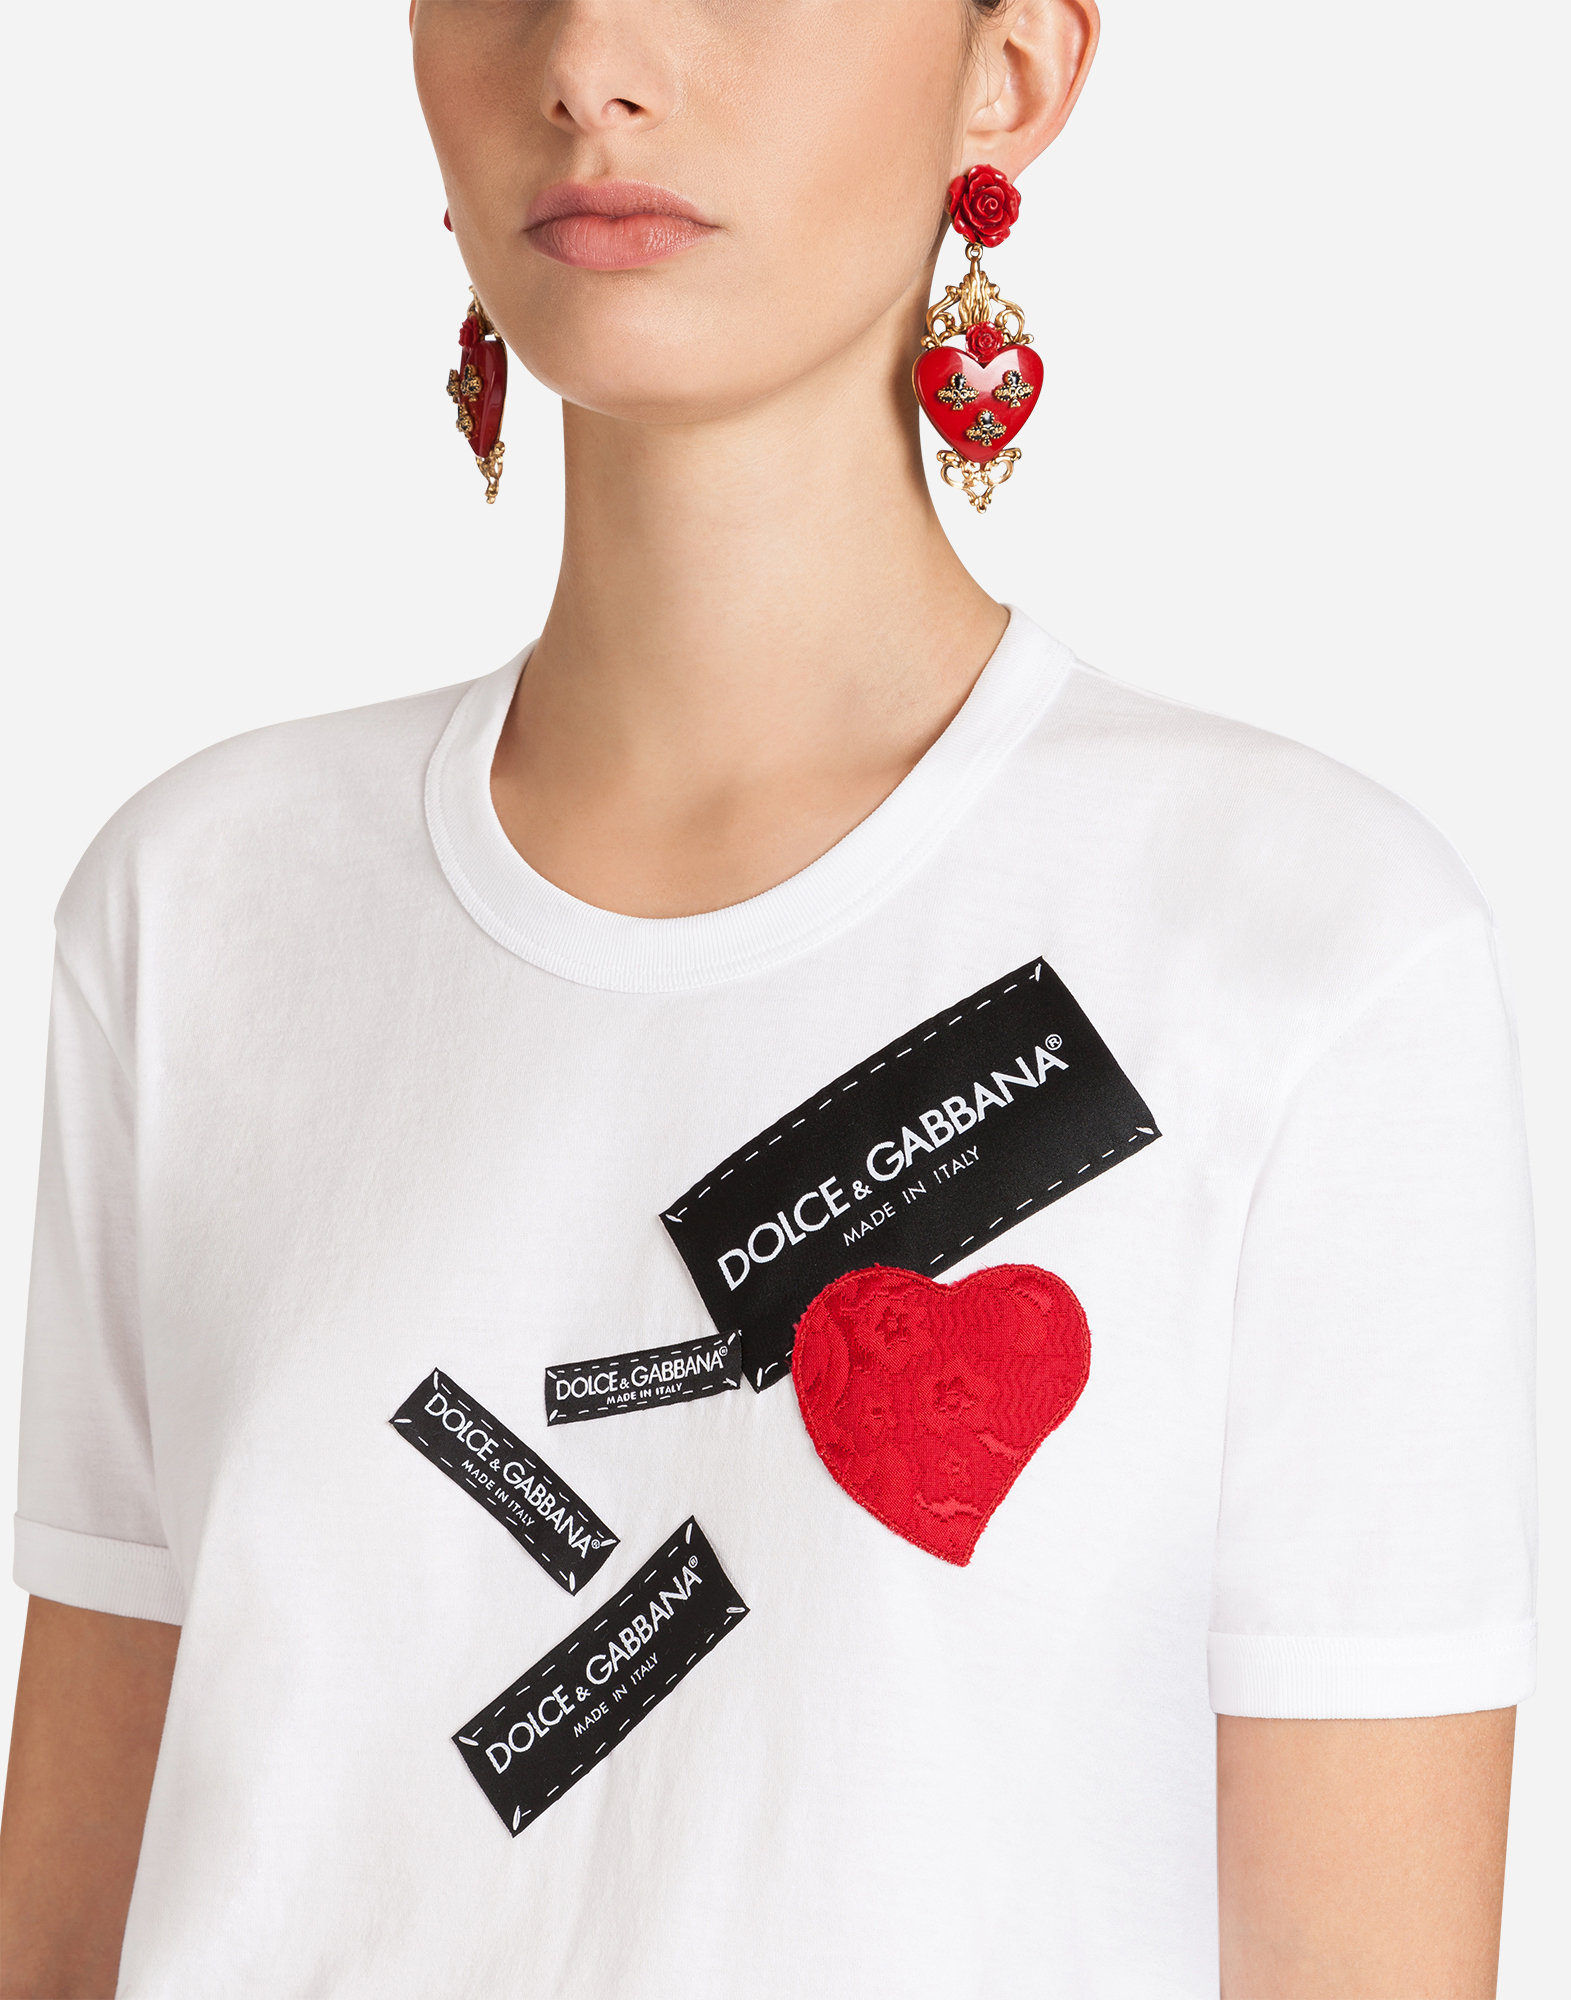 dolce and gabbana t shirts women's sale